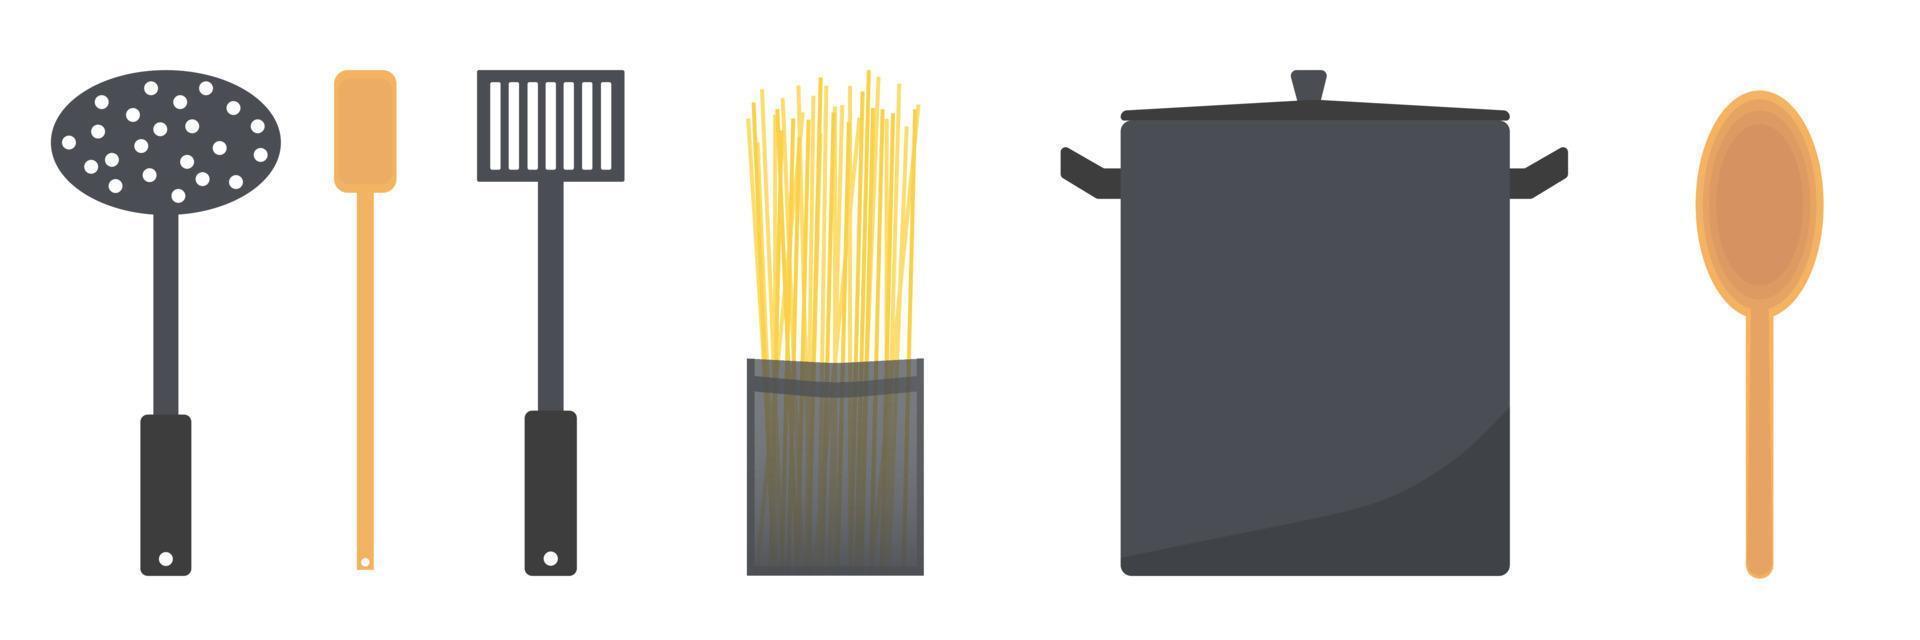 definir utensílio e ferramentas para cozinhar ilustração plana vetorial de espaguete vetor